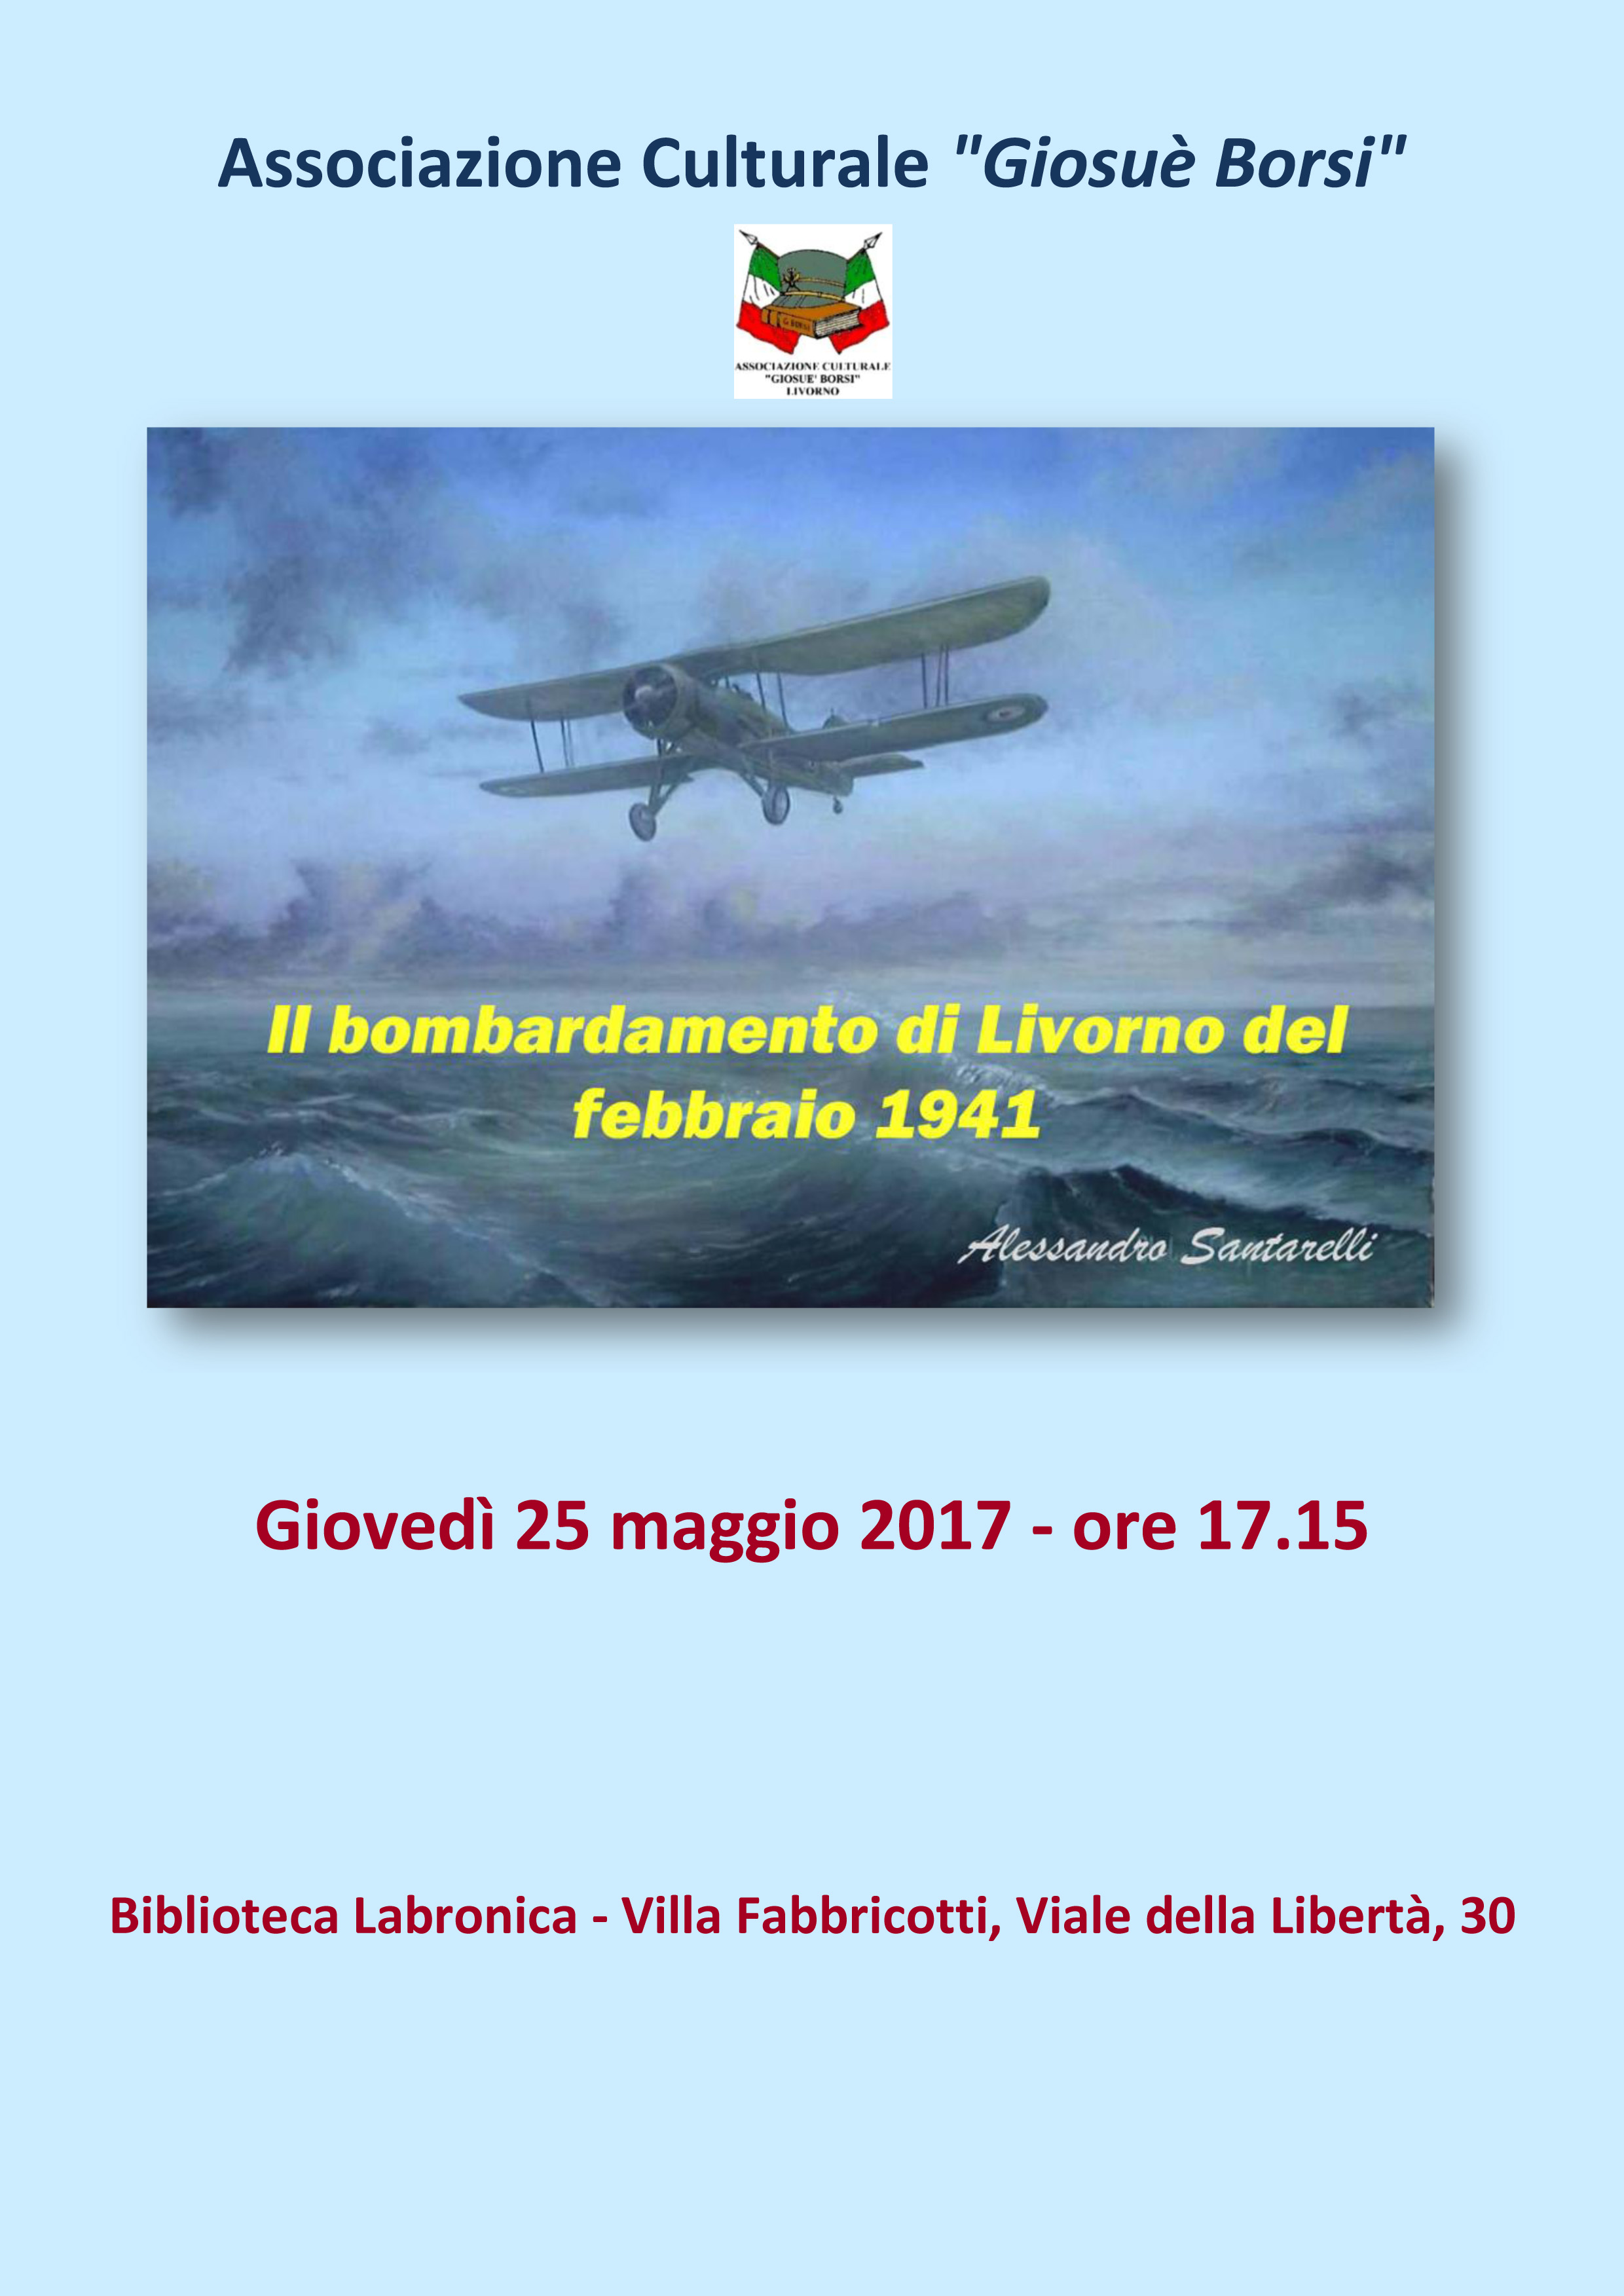 IL BOMBARDAMENTO DI LIVORNO NEL FEBBRAIO 1941, conferenza del prof. Alessandro Santarelli